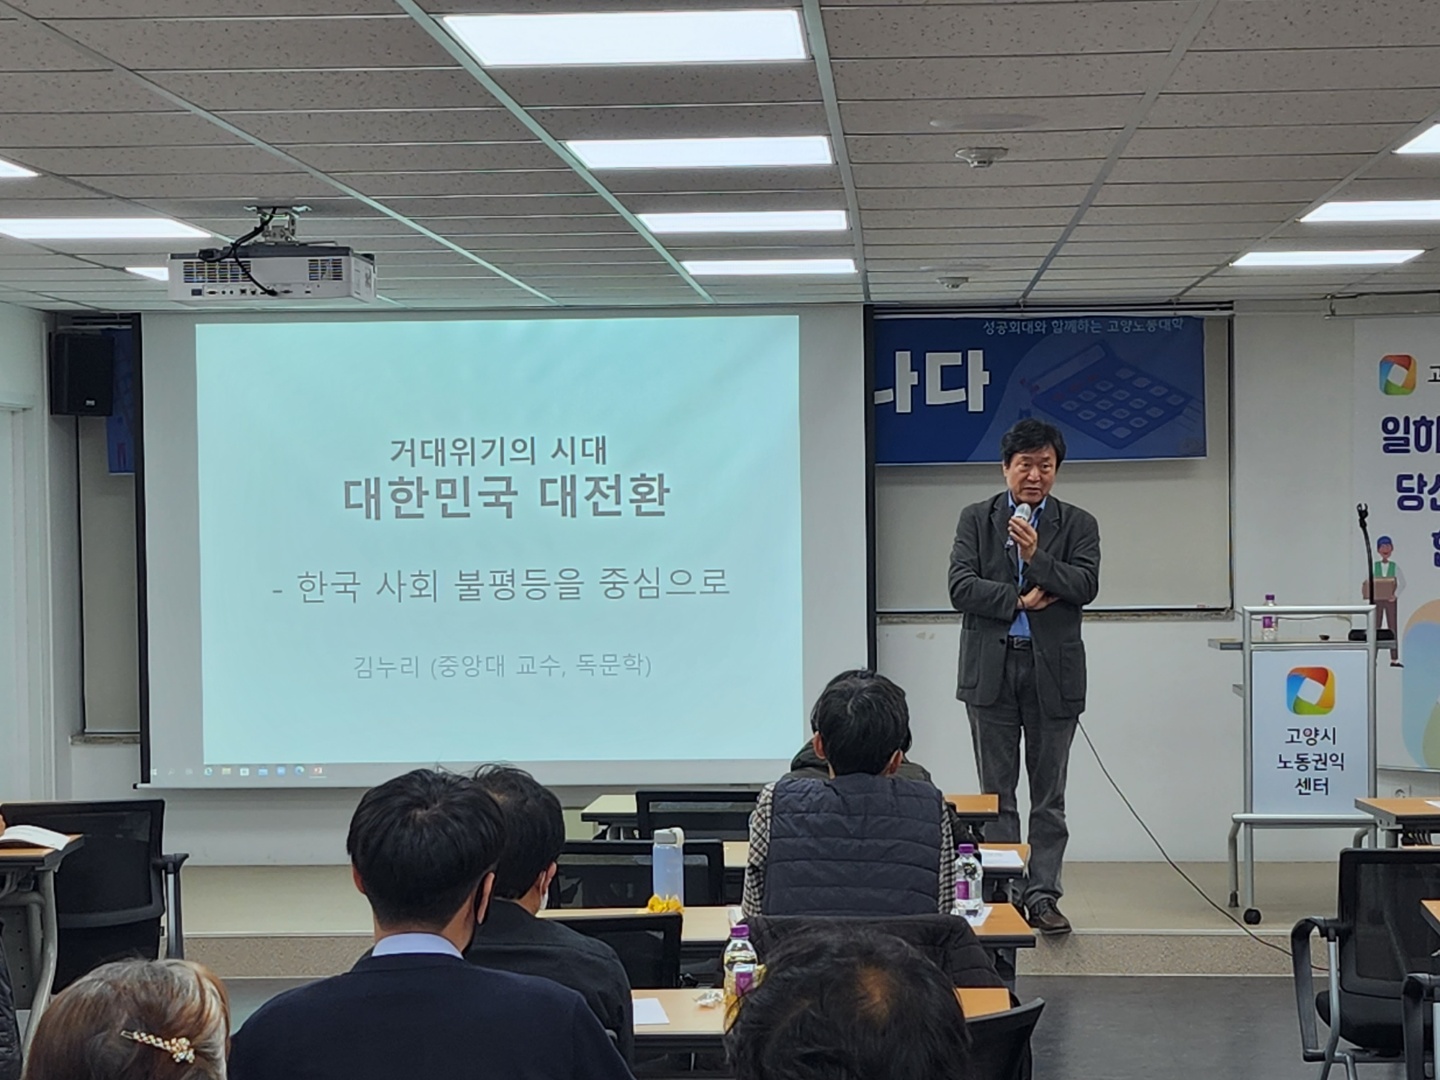 김누리 교수 '한국사회 불평등과 과제'